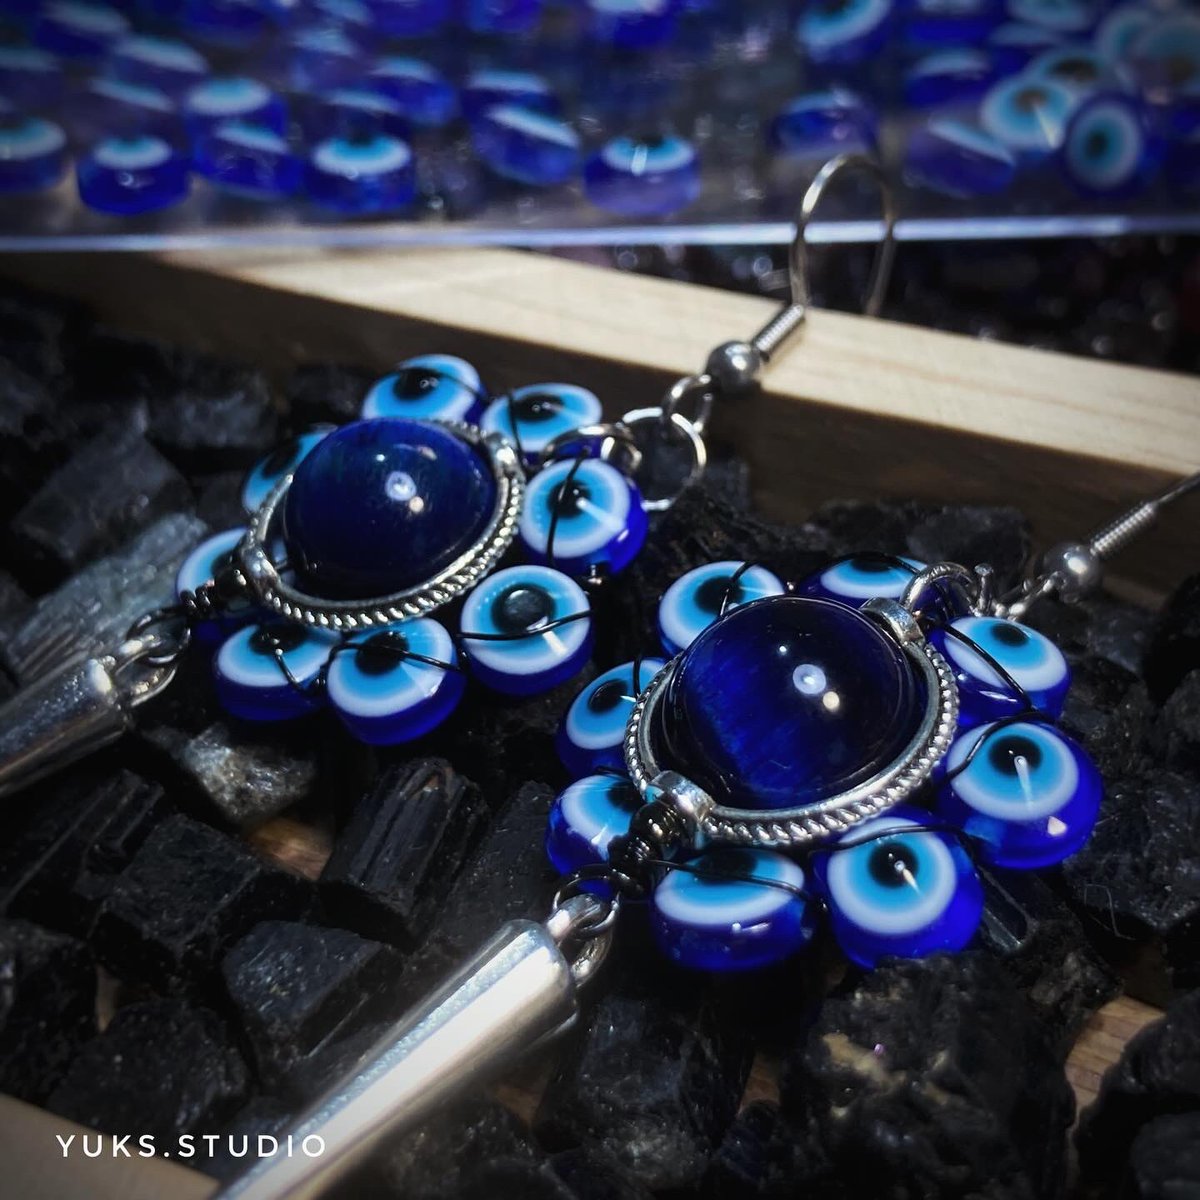 ชิ้นสุดท้ายของวันนี้ นอนได้ !! 

Blue Tiger eye(dry) with evil eye beads made by Yuks. 🦉

#wirewrapping #wirewrappedjewelry 
#wirewrap #wirewrappedcrystals 
#handcrafed #evileye #evileyejewelry